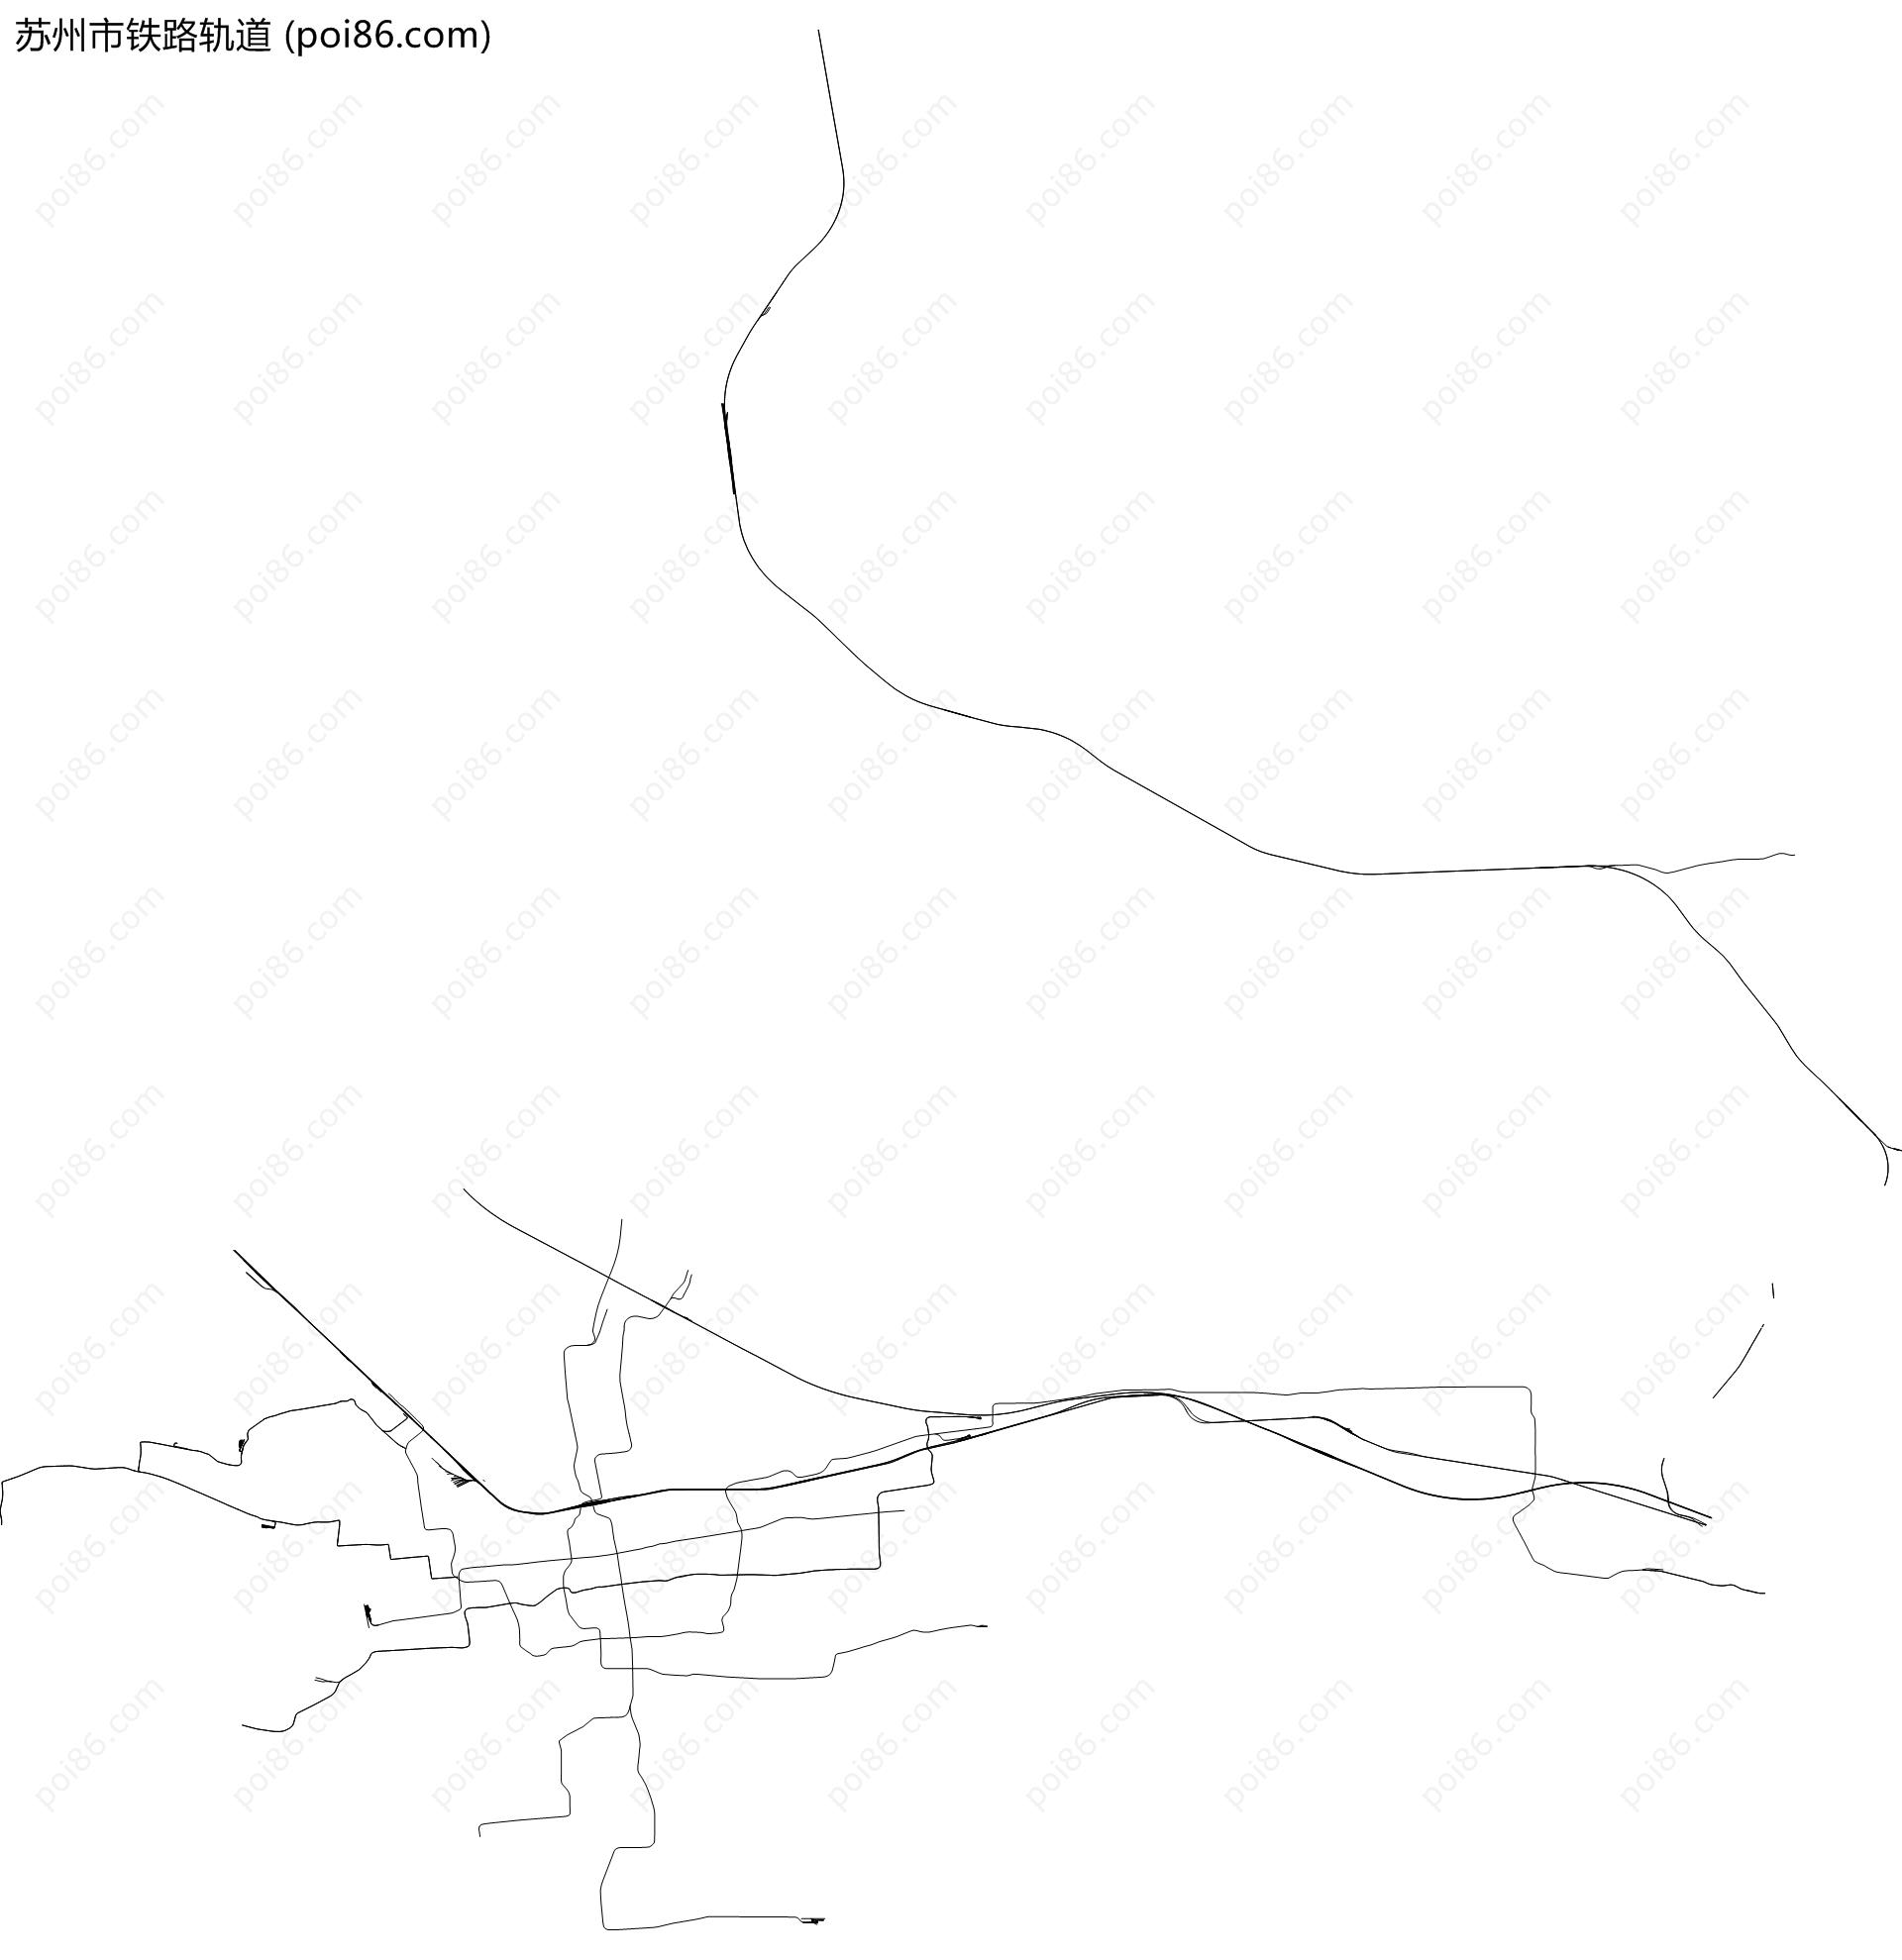 苏州市铁路轨道地图